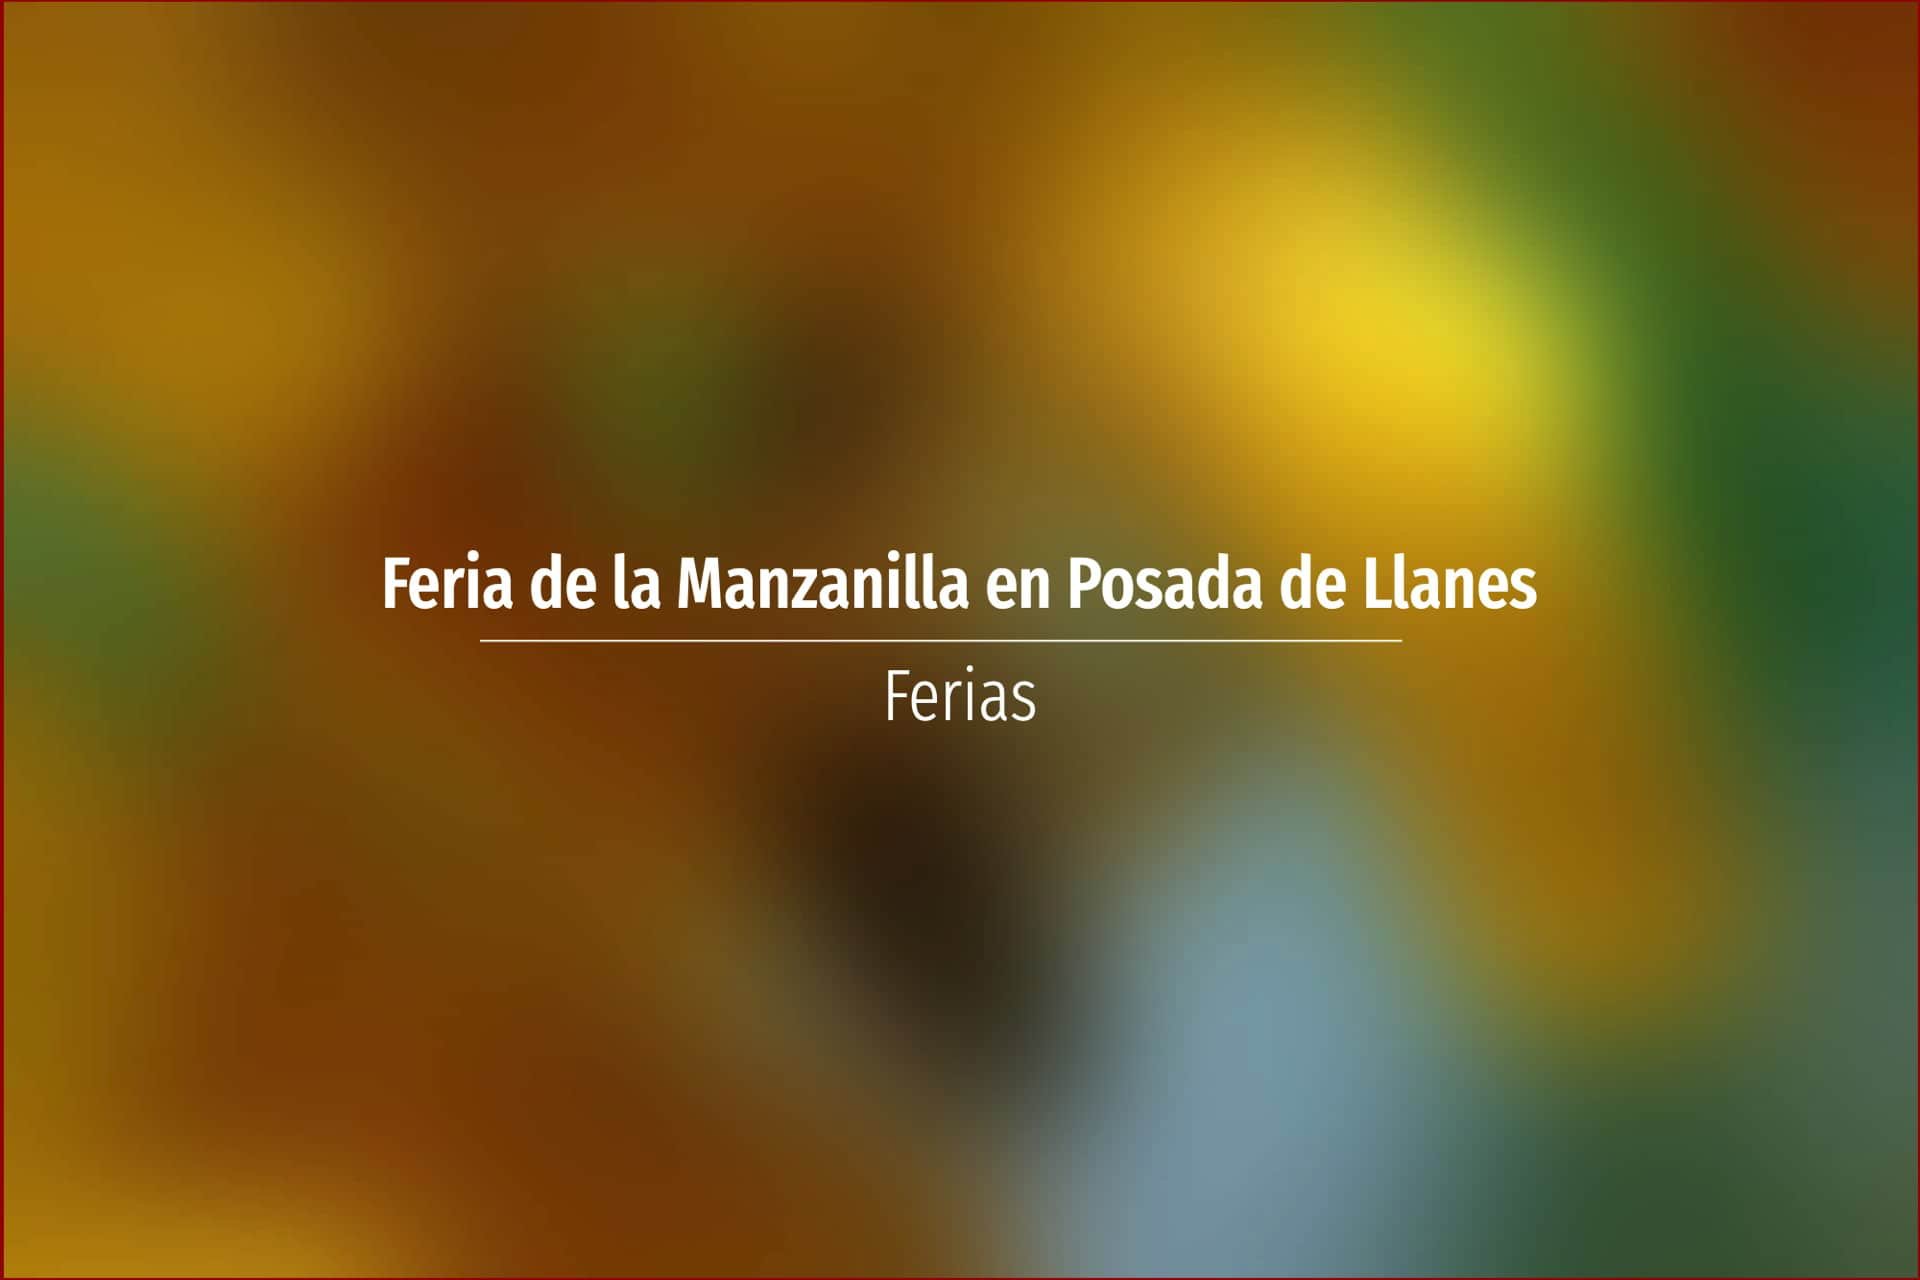 Feria de la Manzanilla en Posada de Llanes